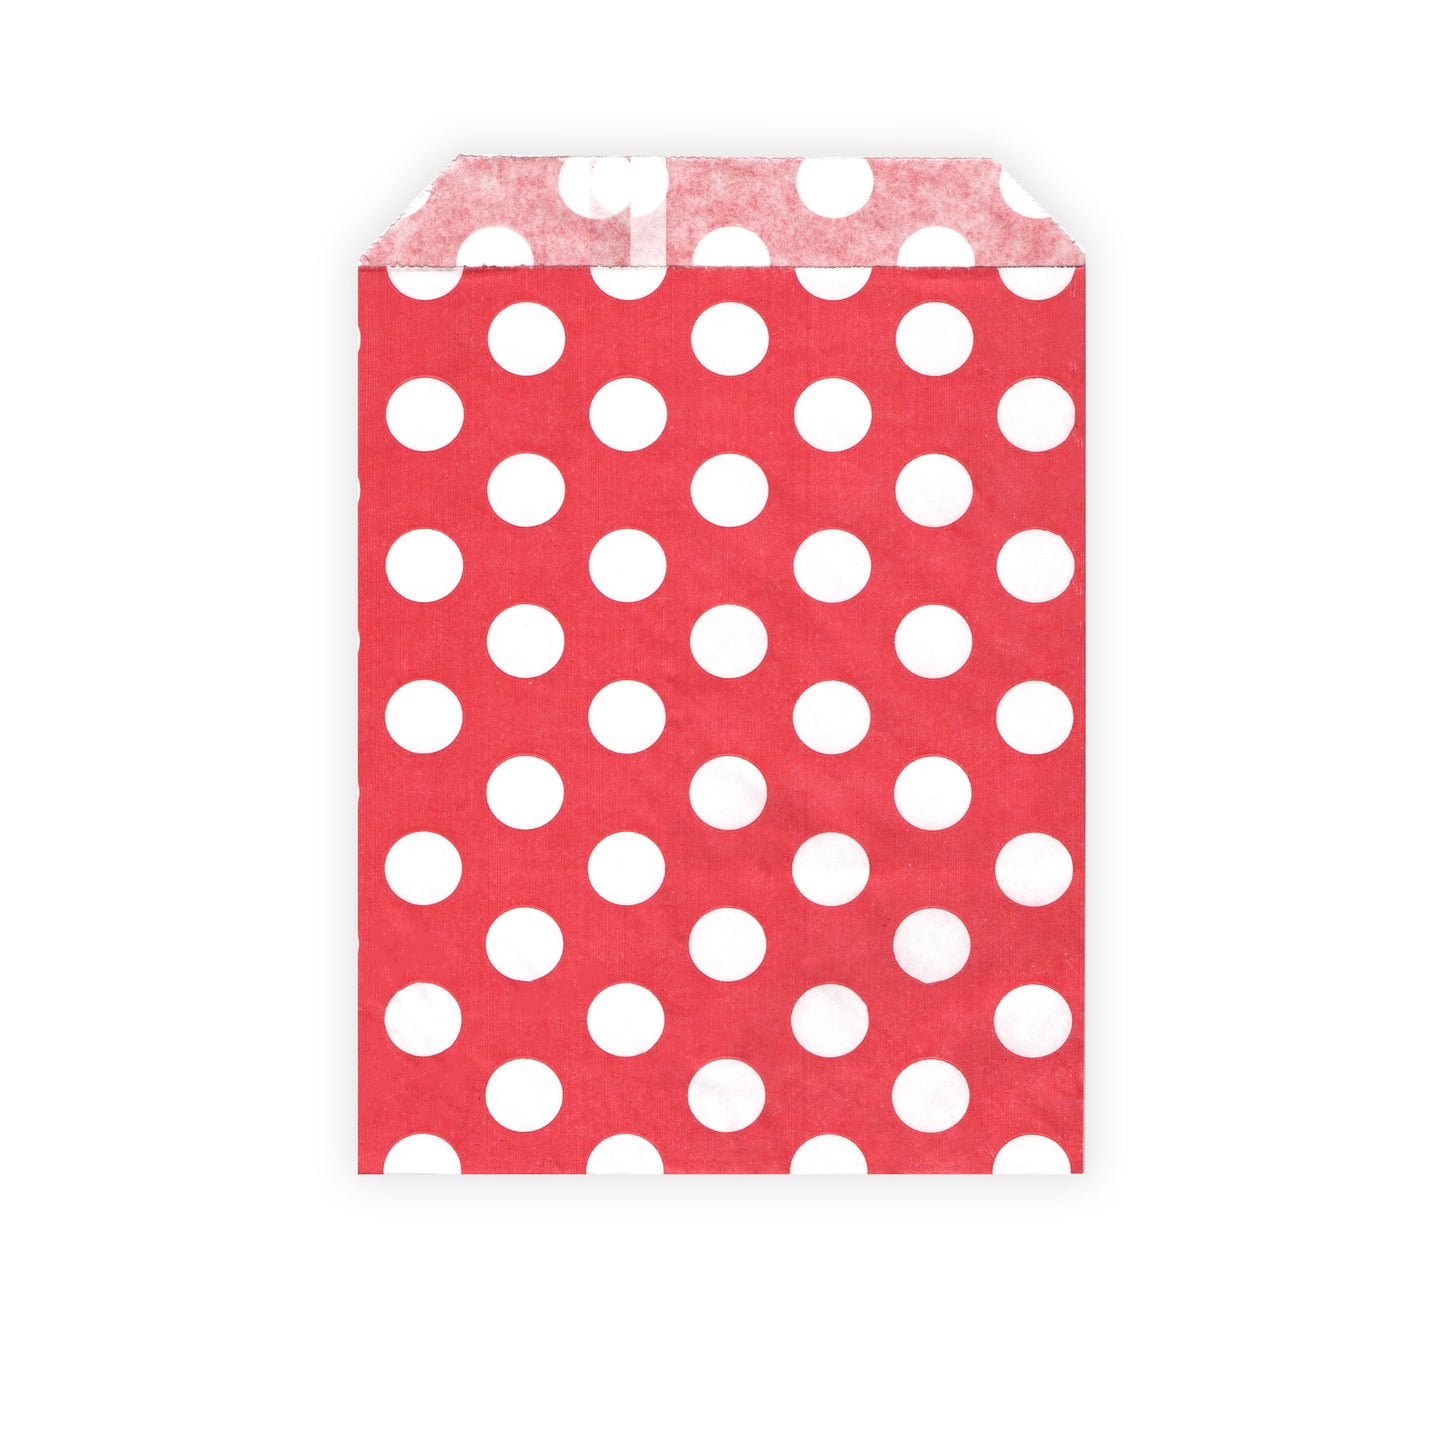 100 Stück - Partytüten / Candy Bags - rot / weiß gepunktet - Polka Dots